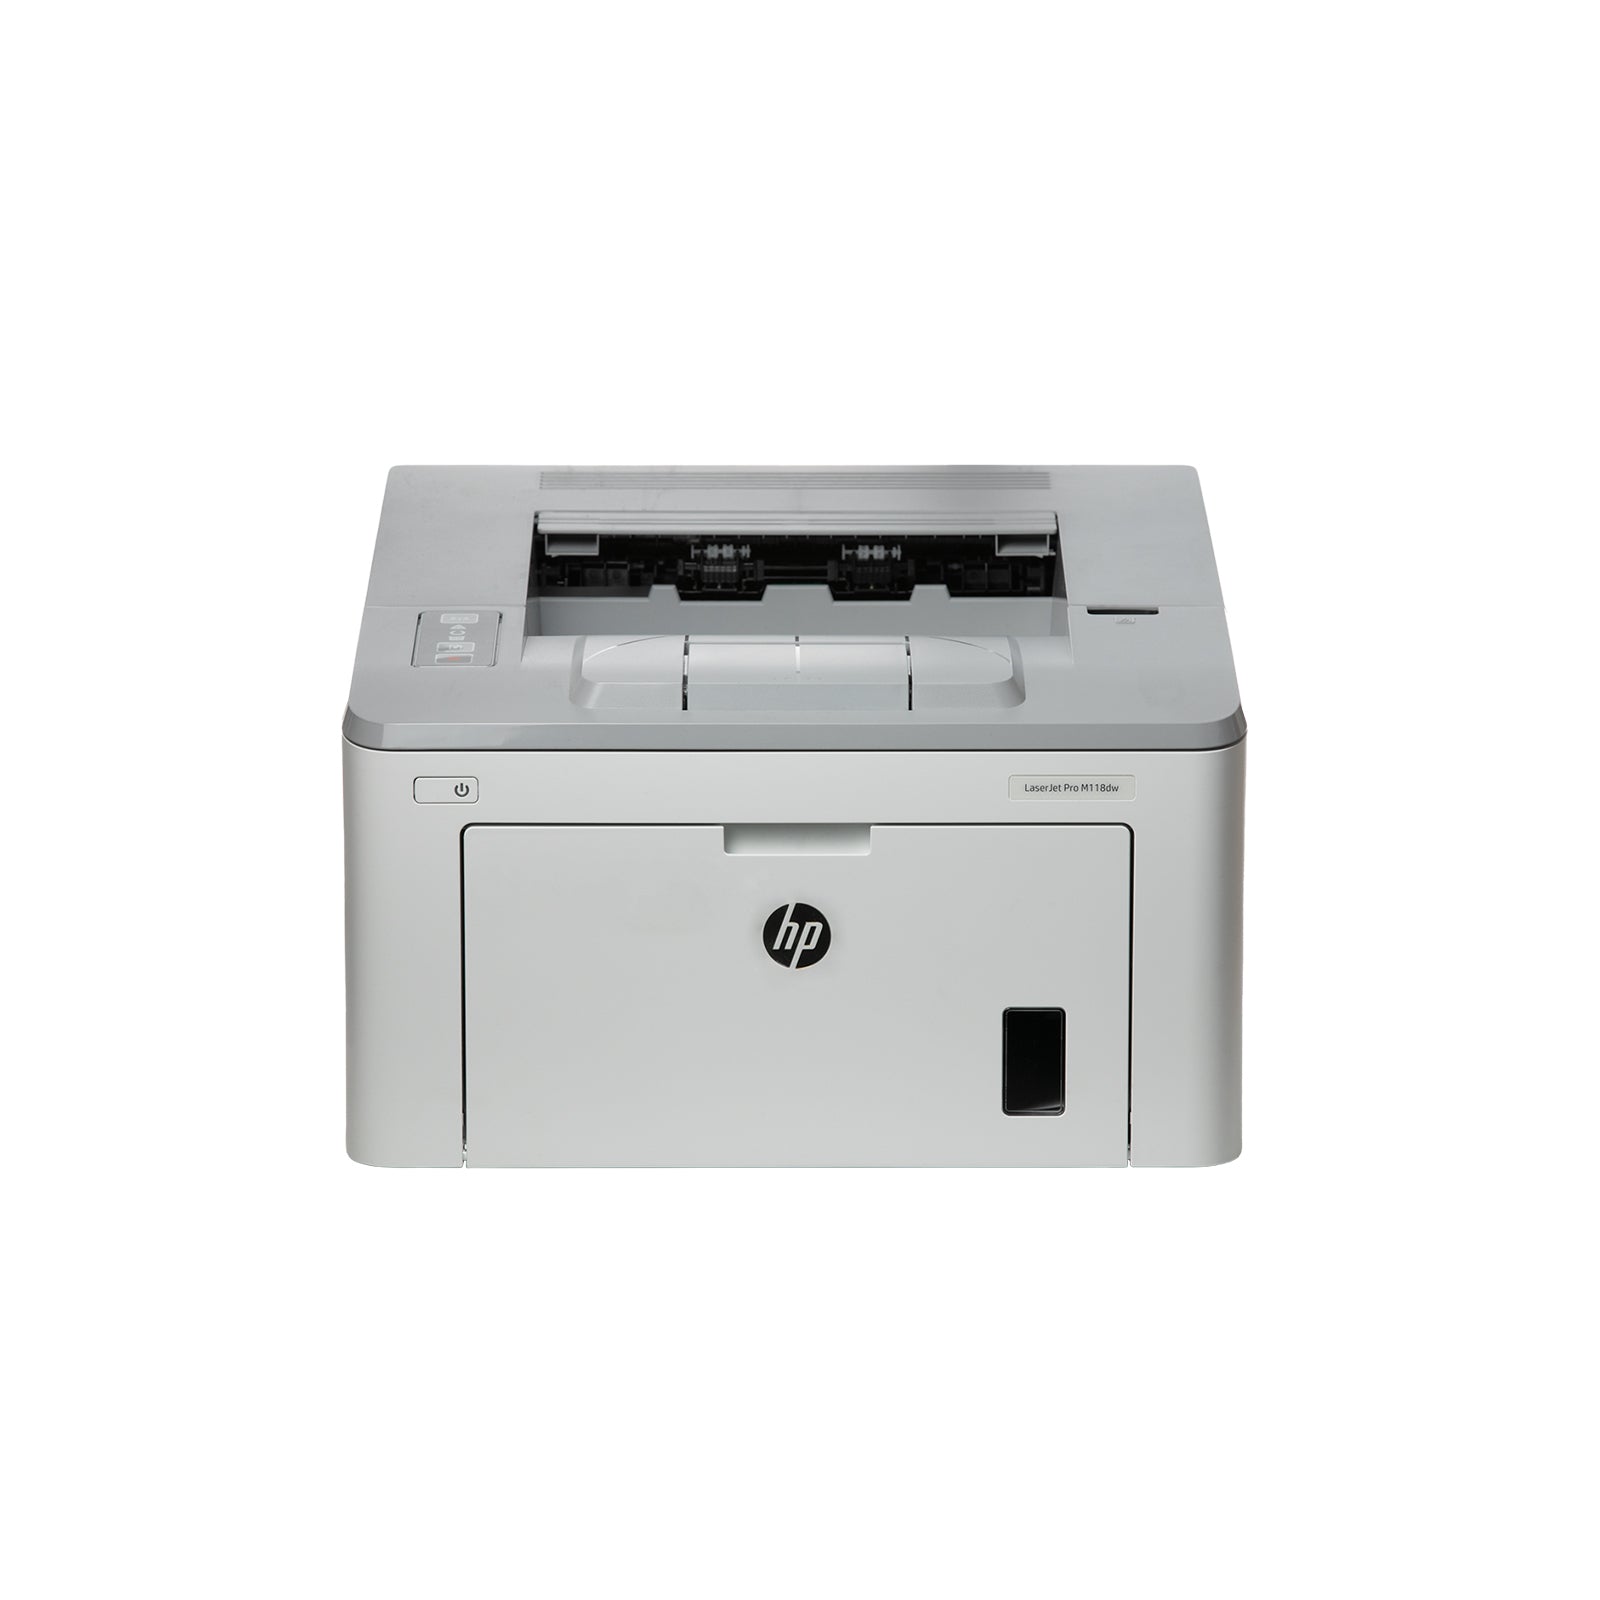 HP LaserJet Pro M118dw Printer 4PA39A Refurbished